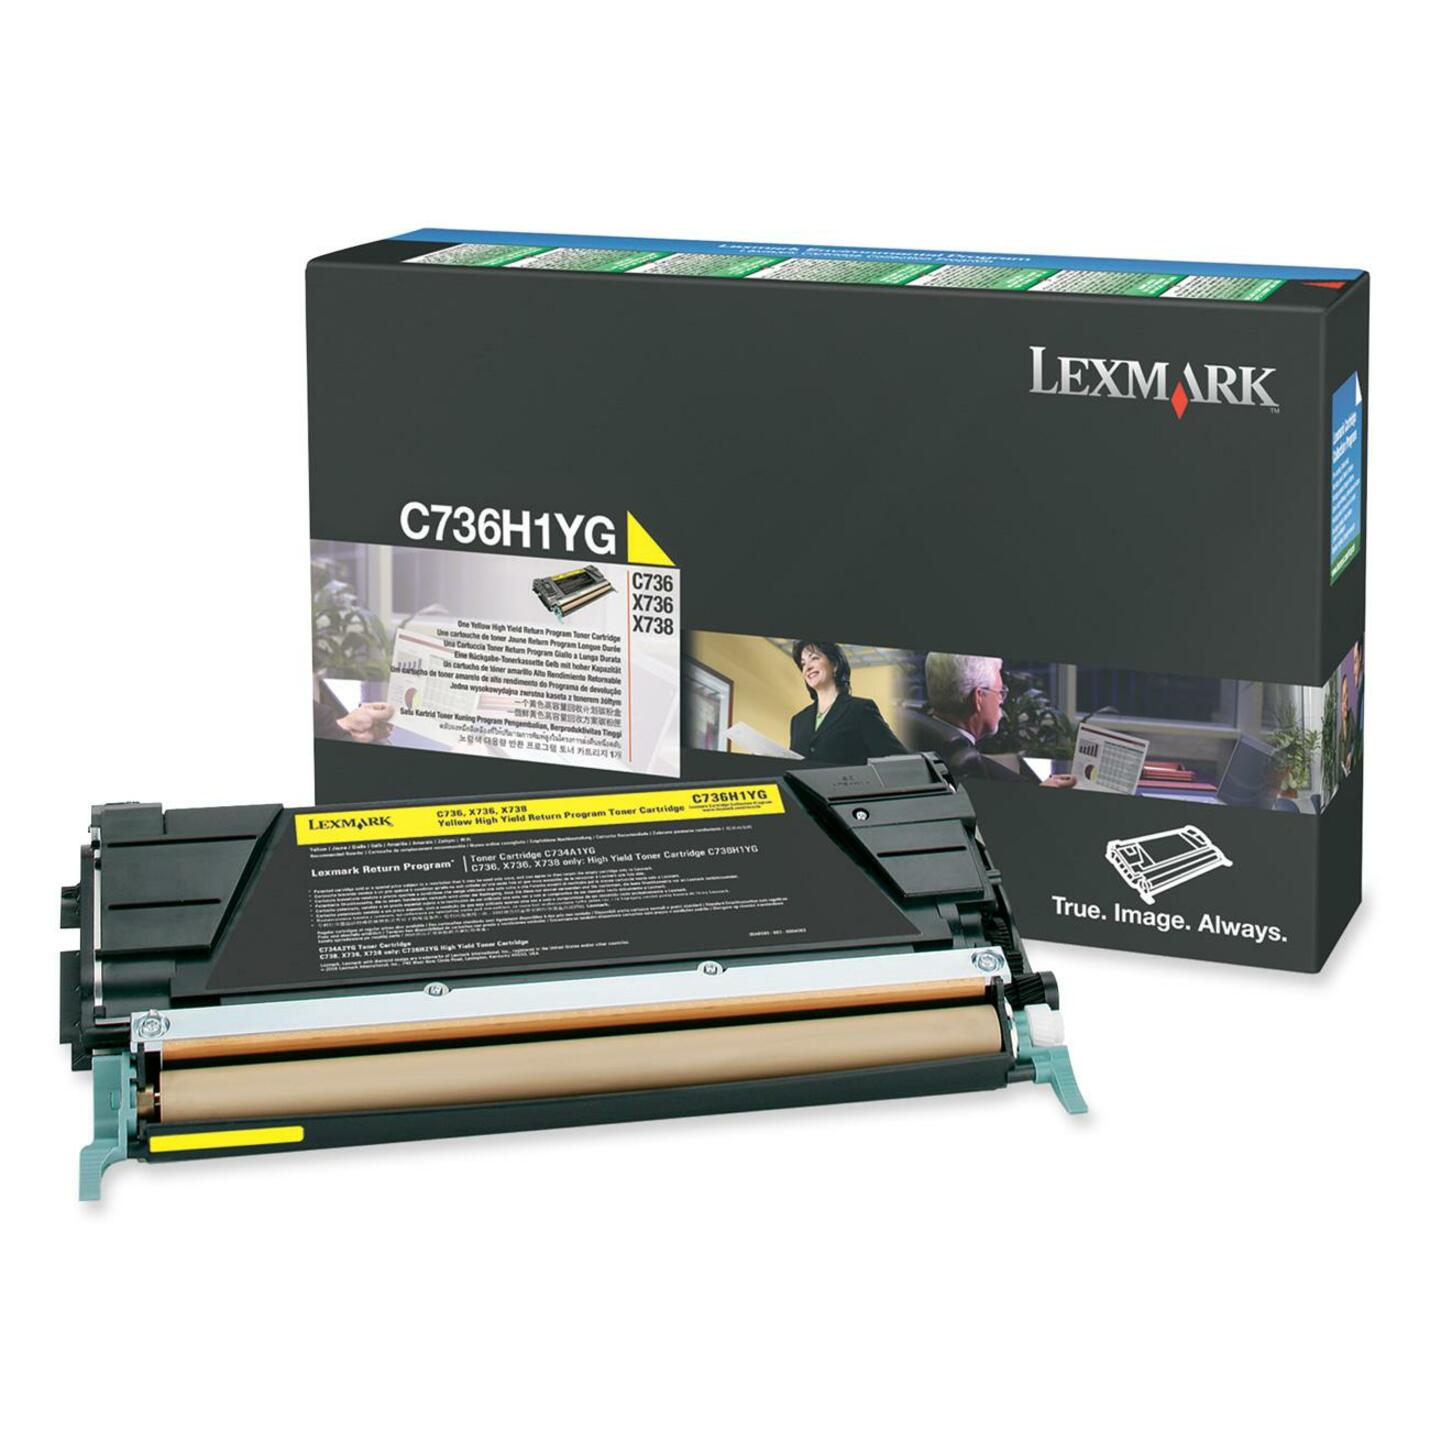 Lexmark C736H1YG Toner Cartridge, 10000 Page Yield, Yellow